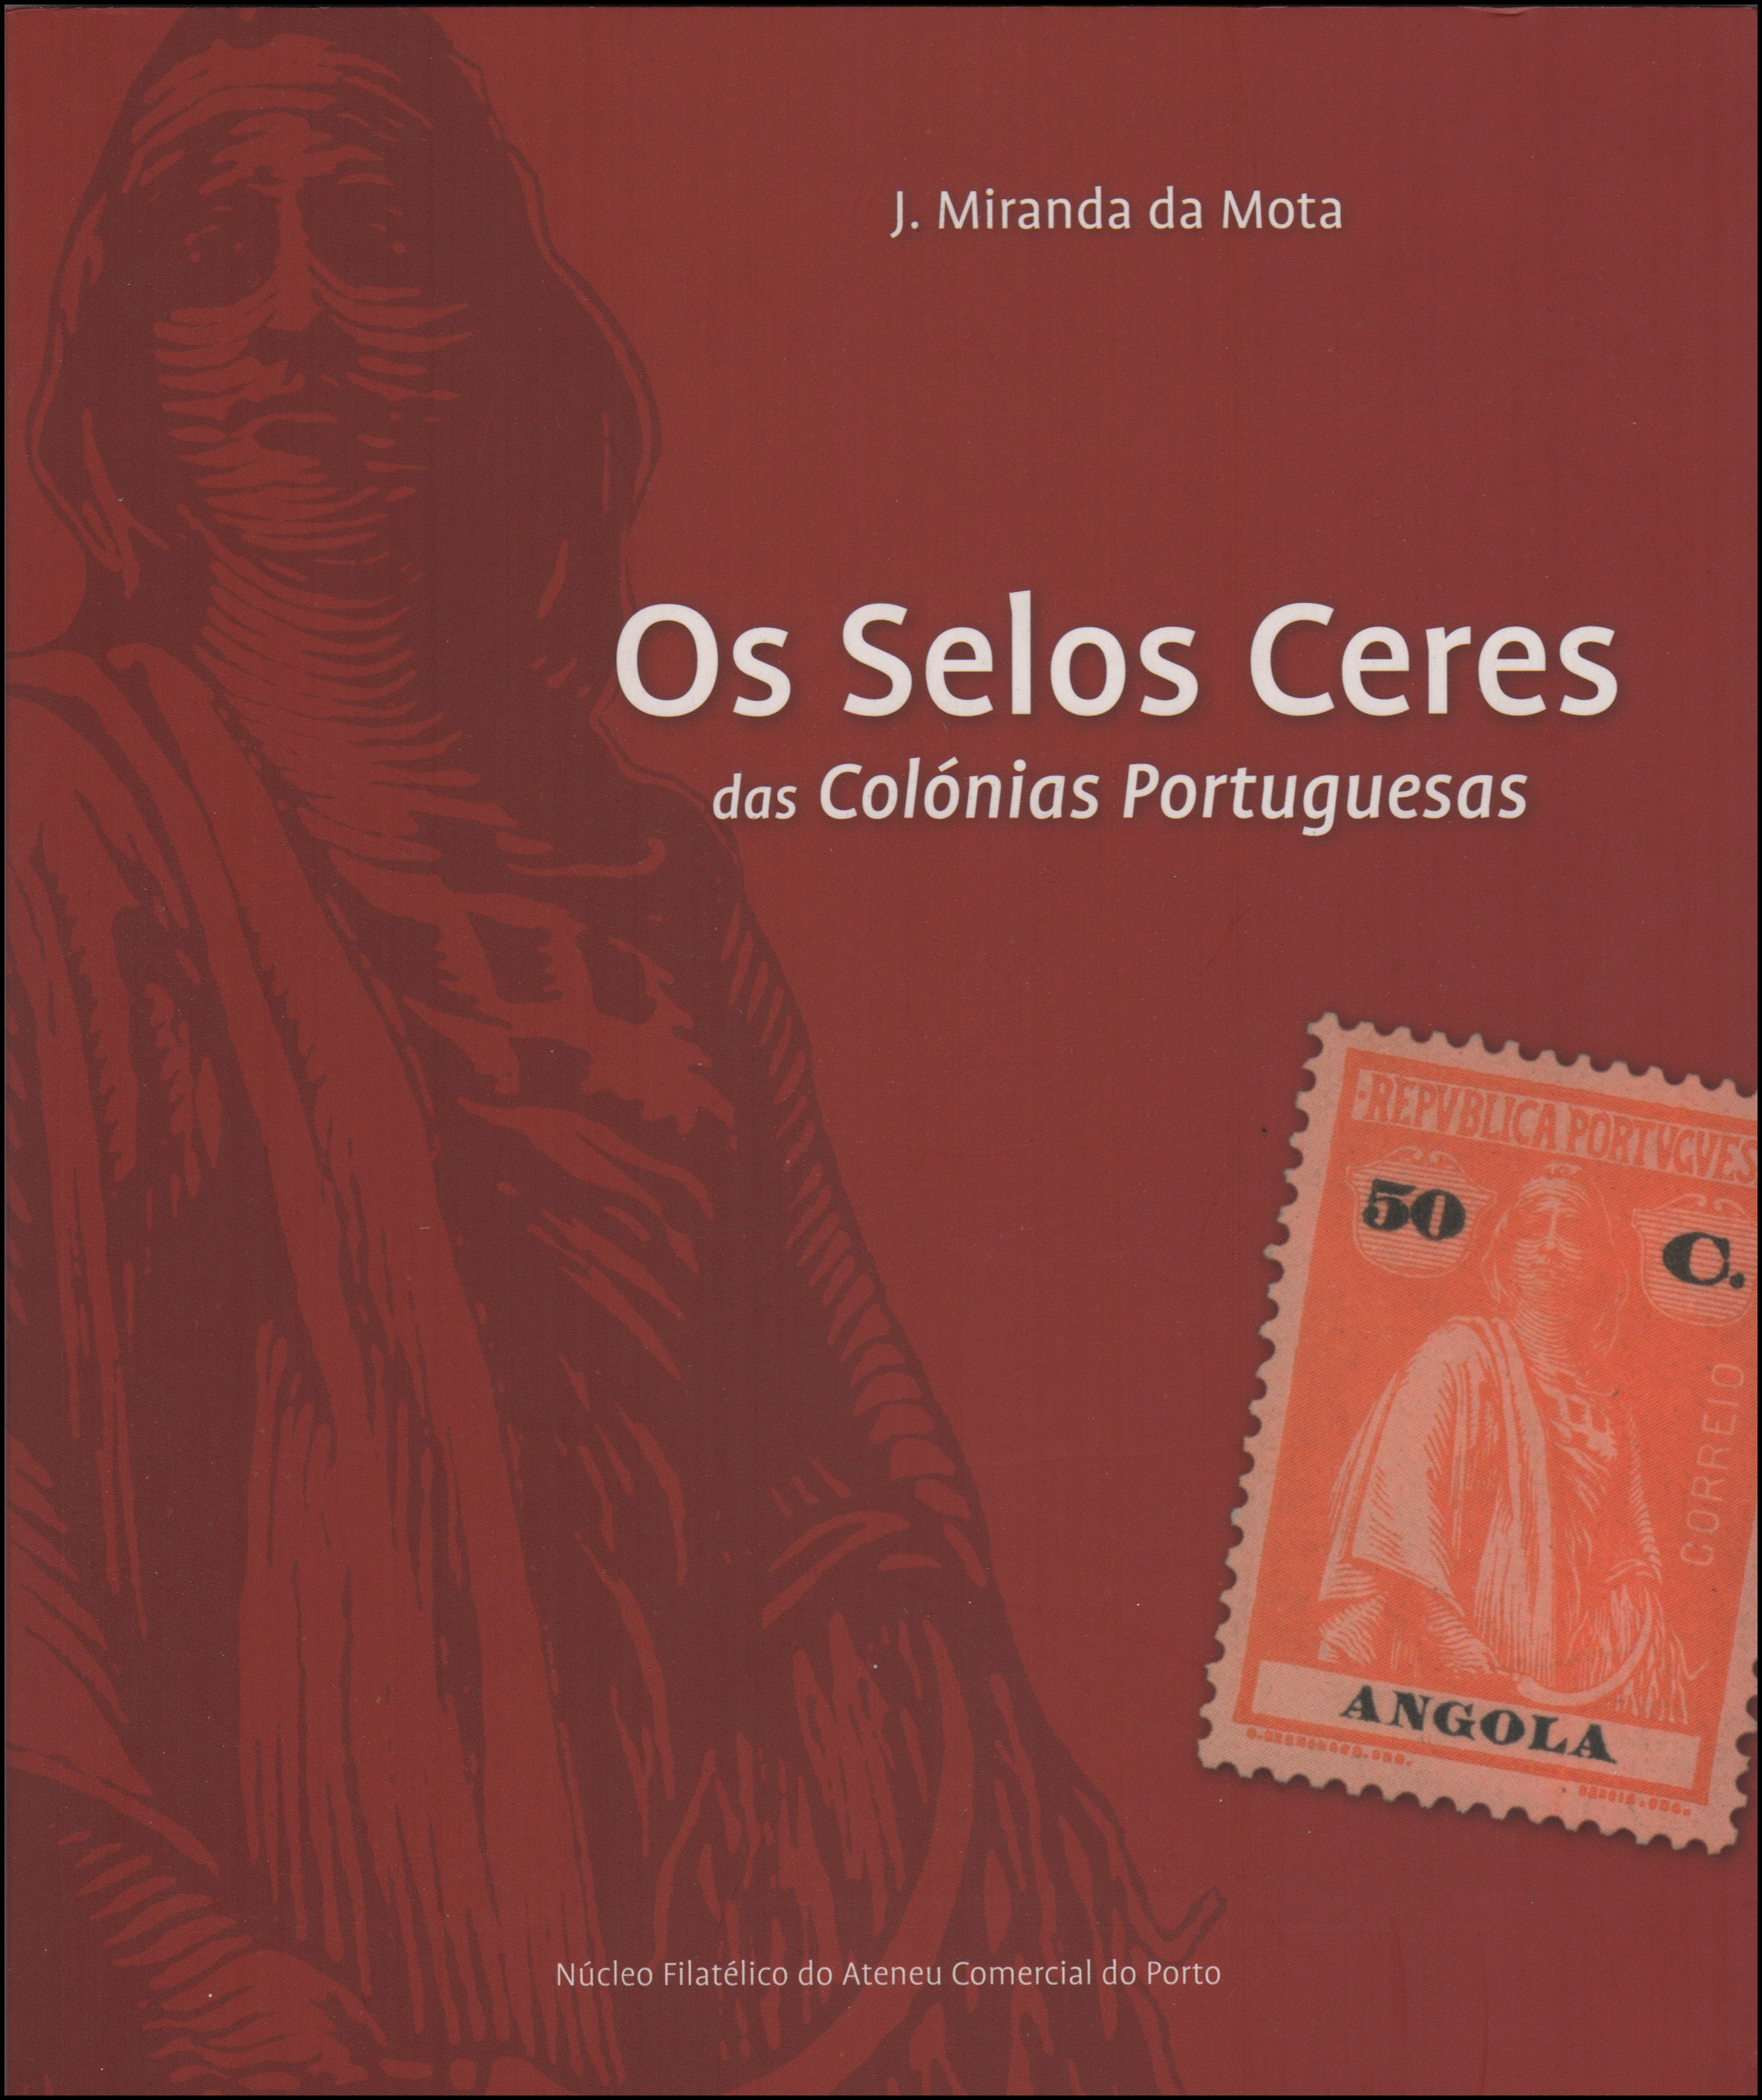 Os Selos Ceres das Colónias Portugueses, J. Miranda da Mota